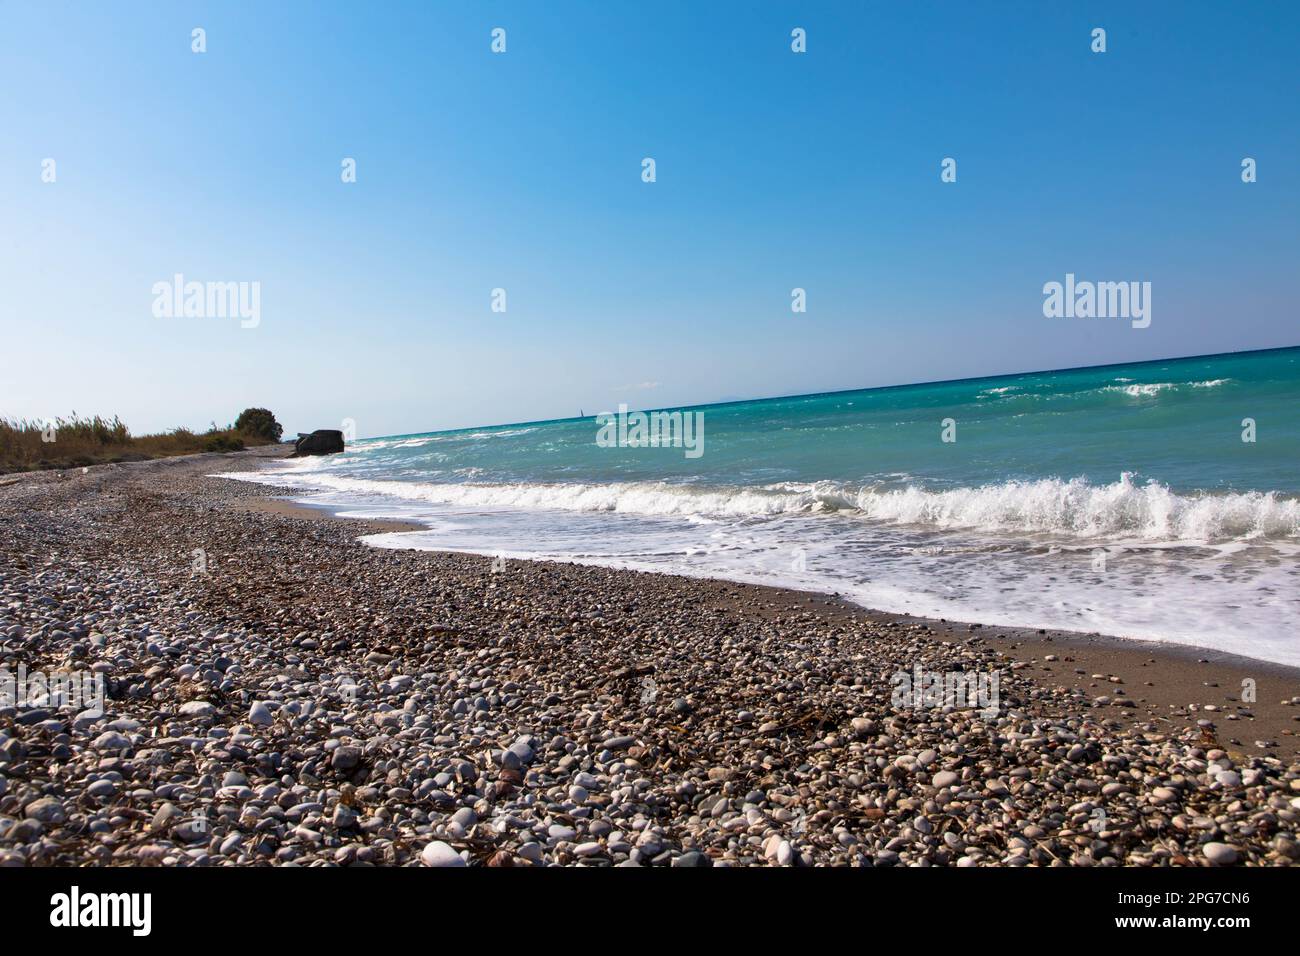 Leerer Strand auf der wunderschönen Insel Rhodos. Spektakuläre Landschaft mit Kieselküste. Ägäisches Meer, Griechenland. Stockfoto